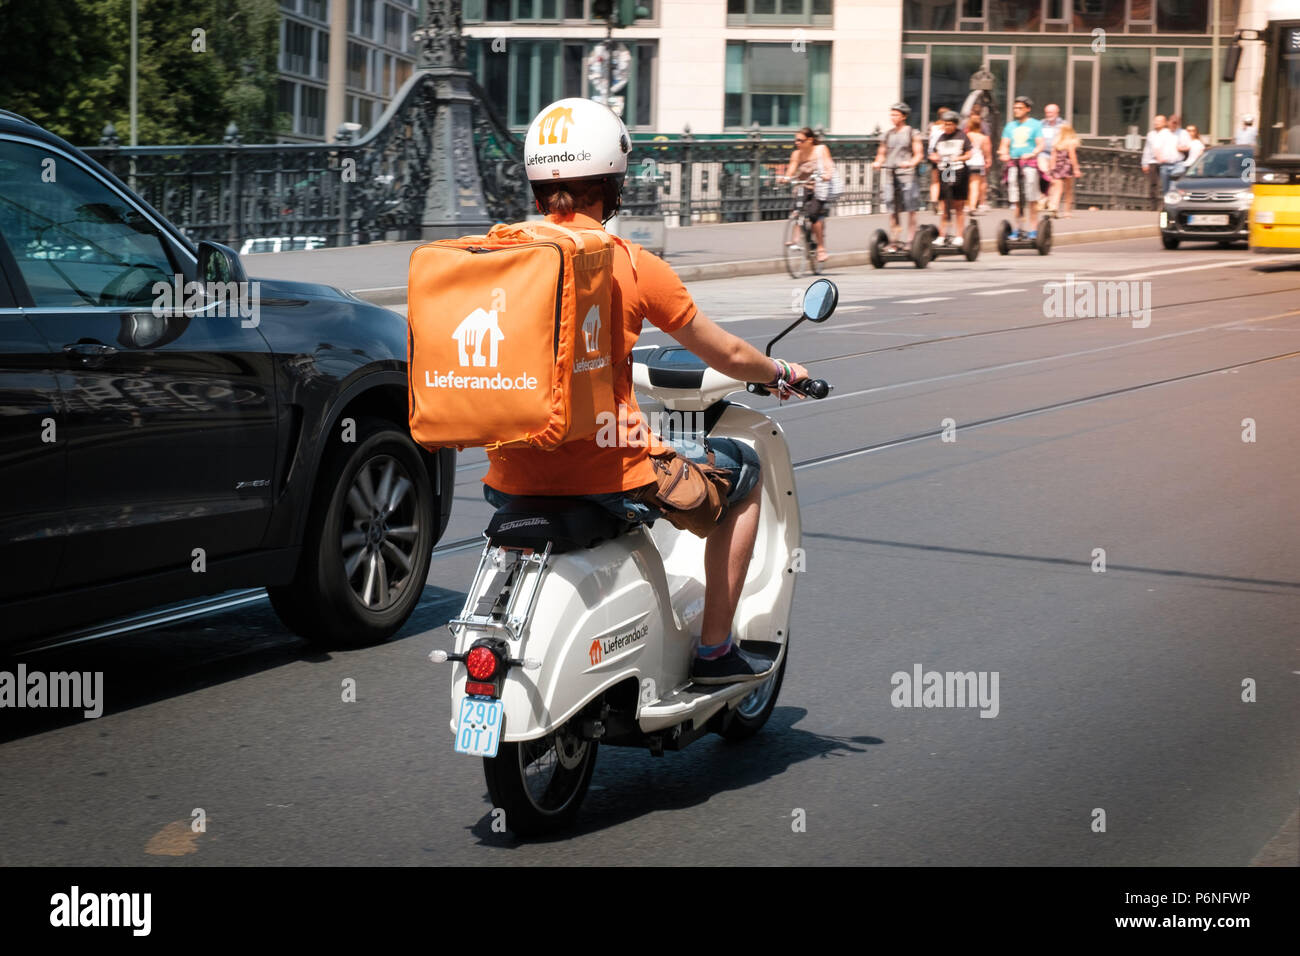 Berlin, Allemagne - juin 2018 : un pilote à partir de la livraison de nourriture Lieferando, une compagnie de la livraison de nourriture, en scooter dans la circulation à Berlin, Allemagne Banque D'Images